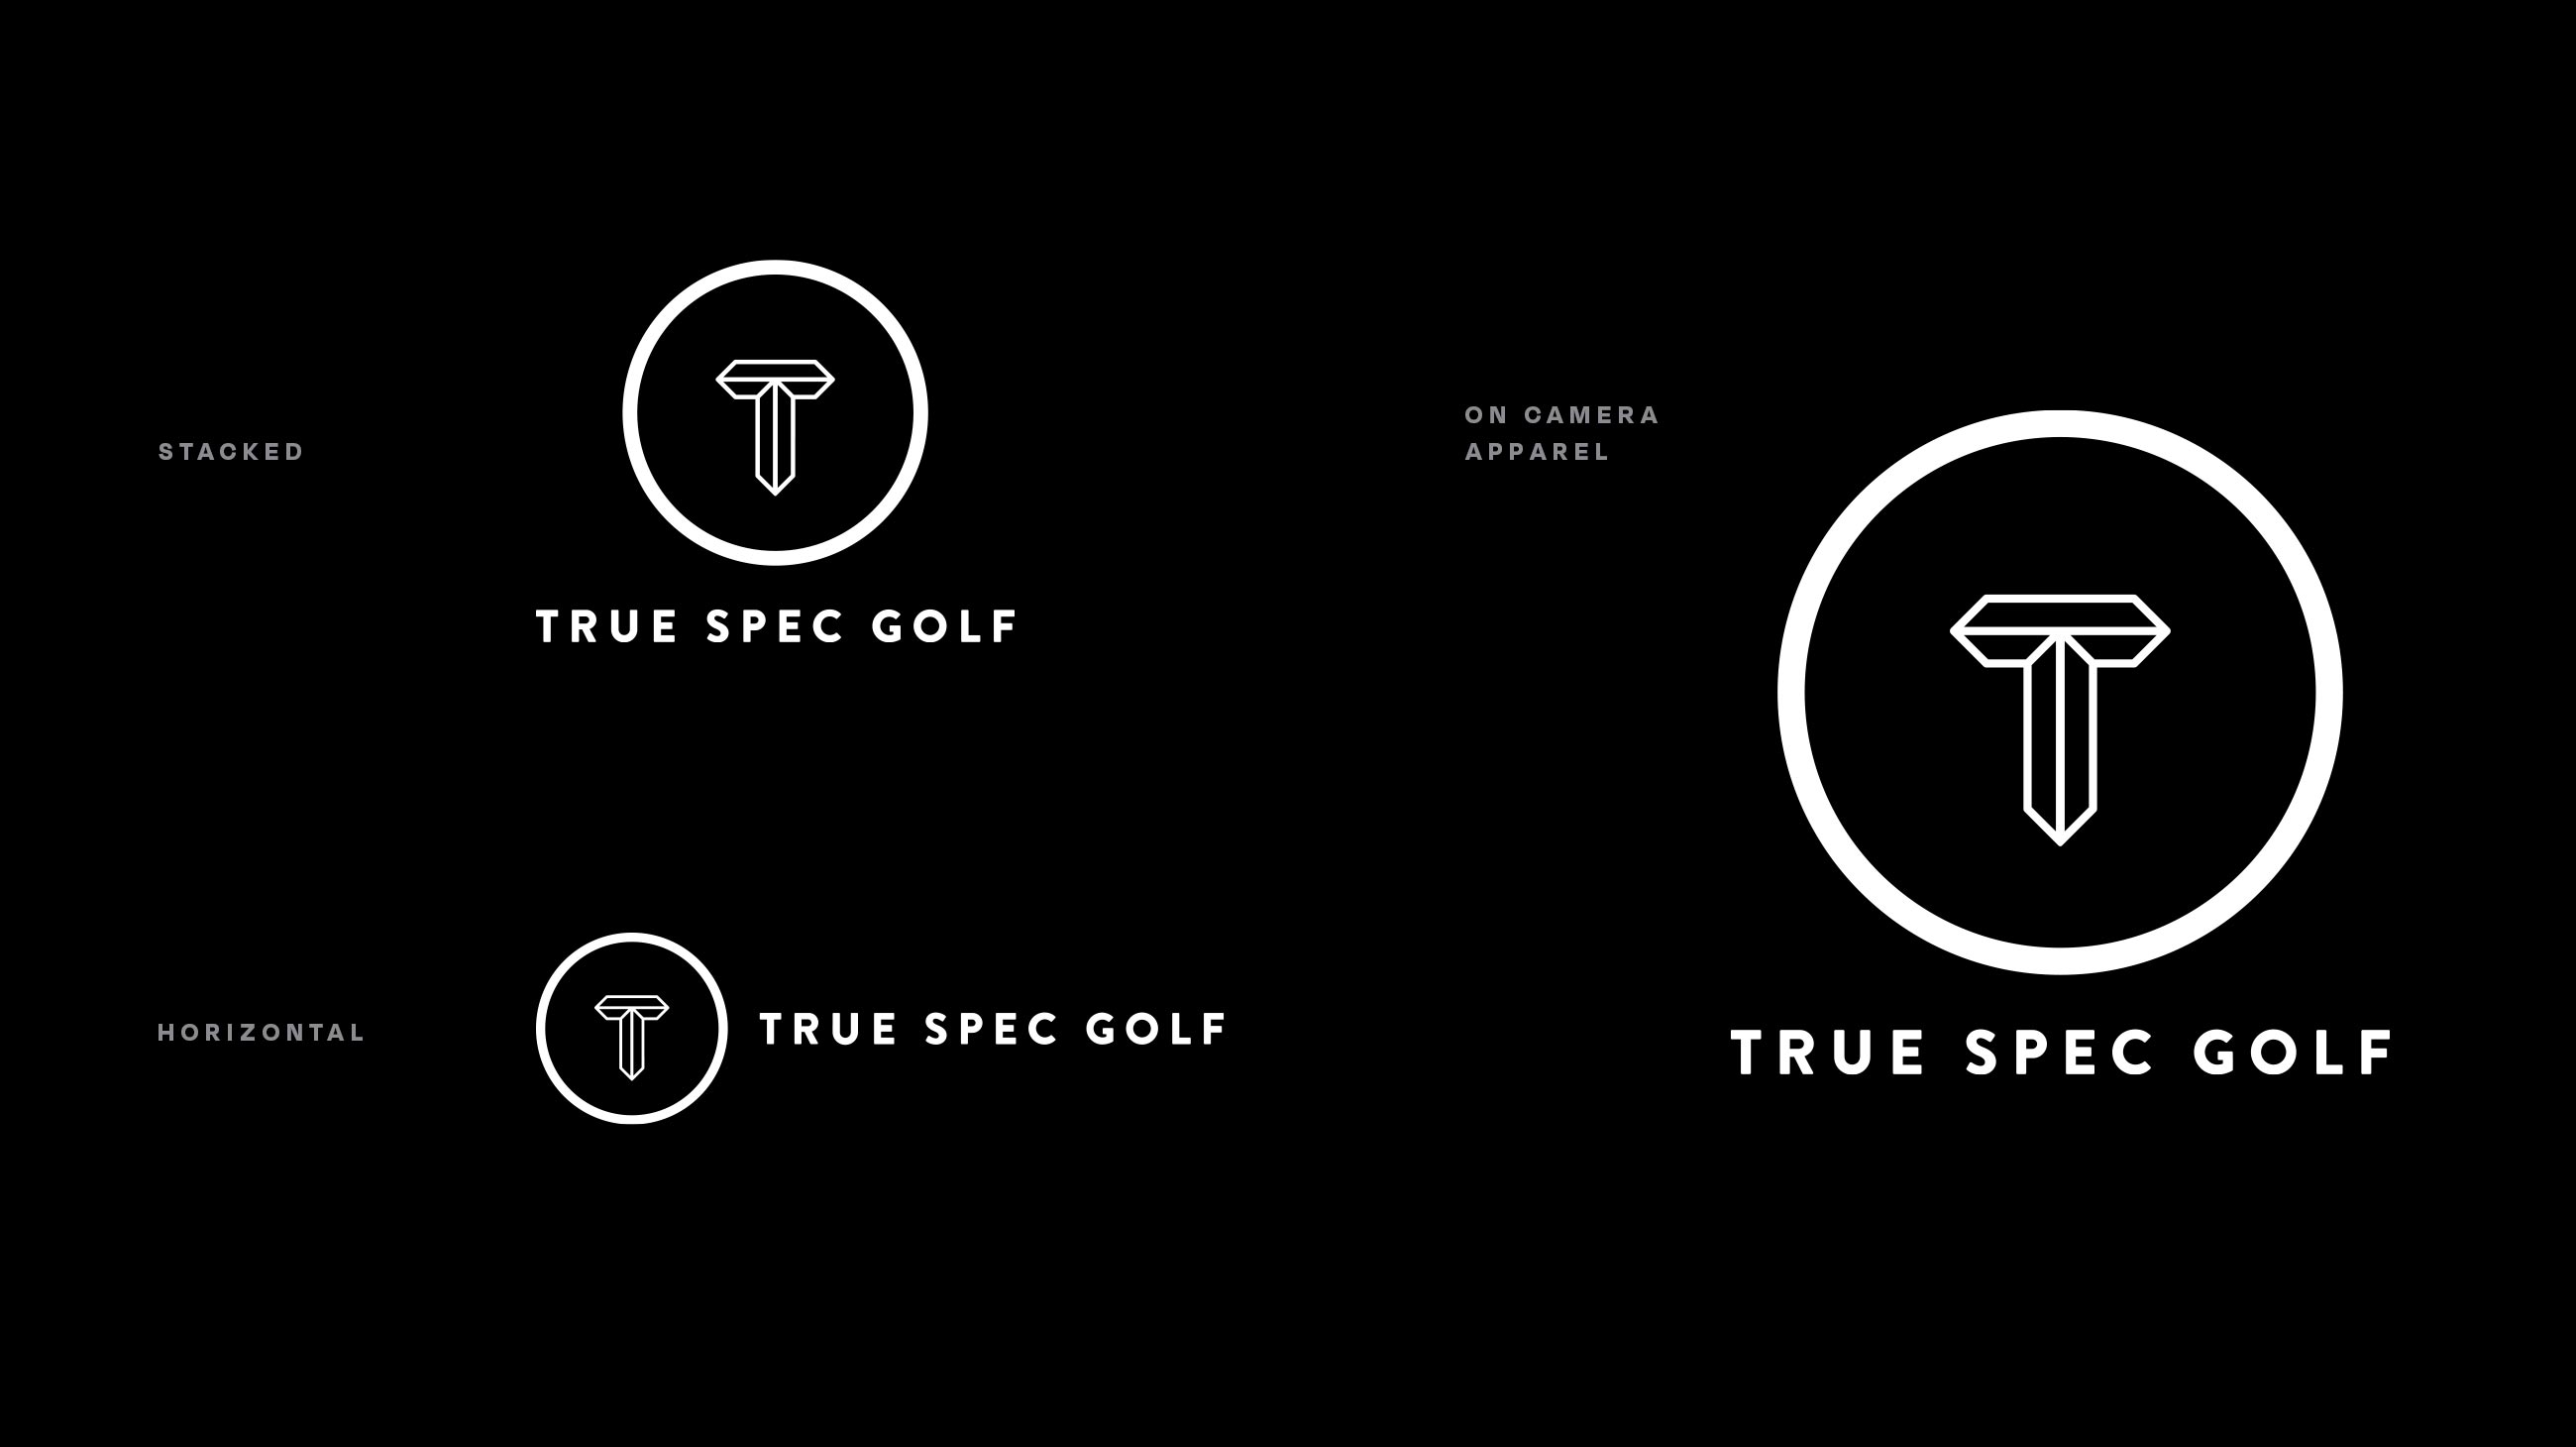 Final True Spec Golf logo lockups